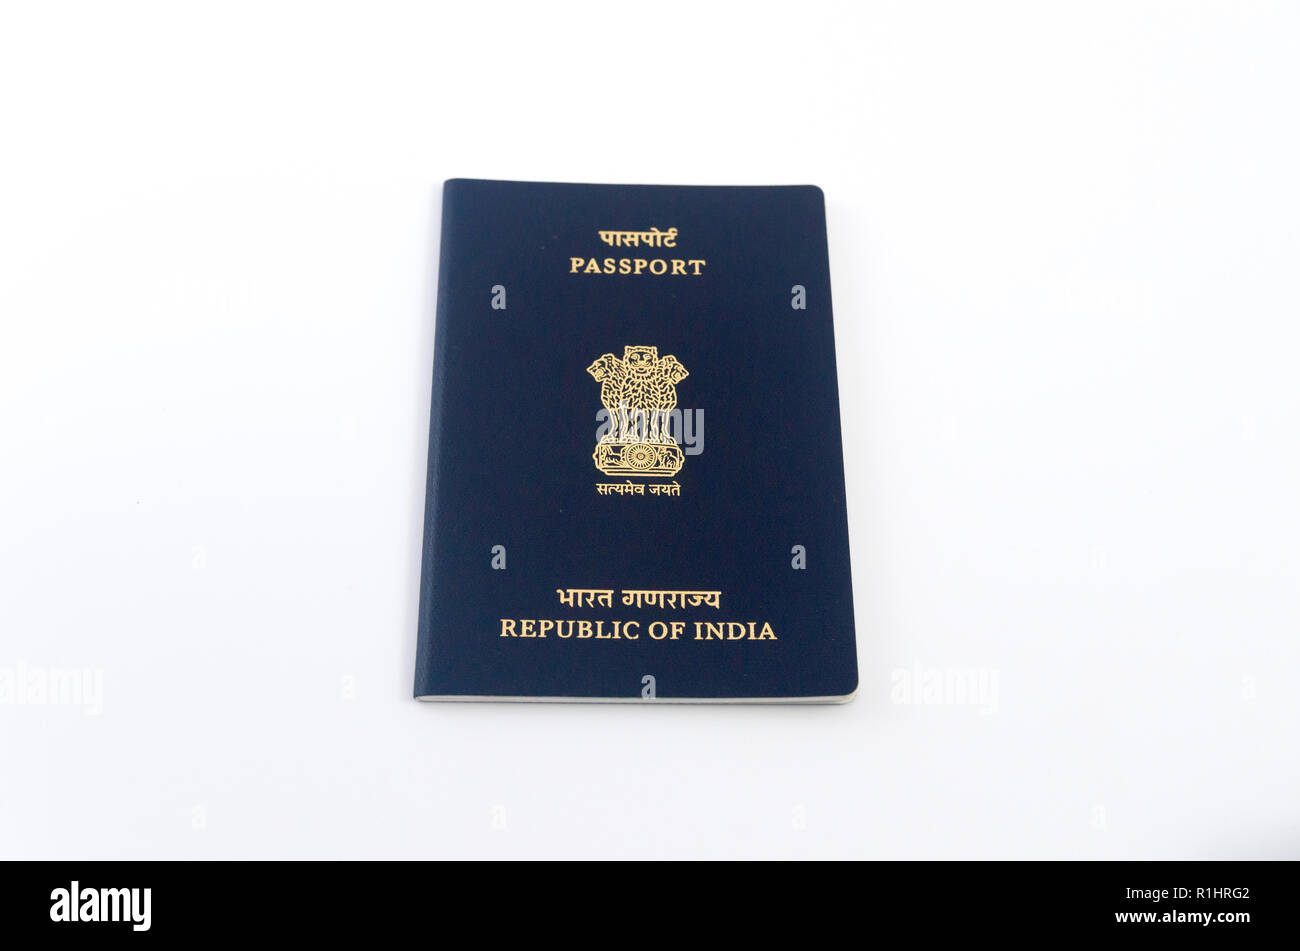 Một chiếc hộ chiếu Ấn Độ đơn lẻ cũng có thể khiến bạn thấy háo hức vì những chuyến phiêu lưu xa xôi sắp tới. Hãy xem những hình ảnh liên quan để tìm hiểu thêm về đất nước và con người Ấn Độ tuyệt đẹp.